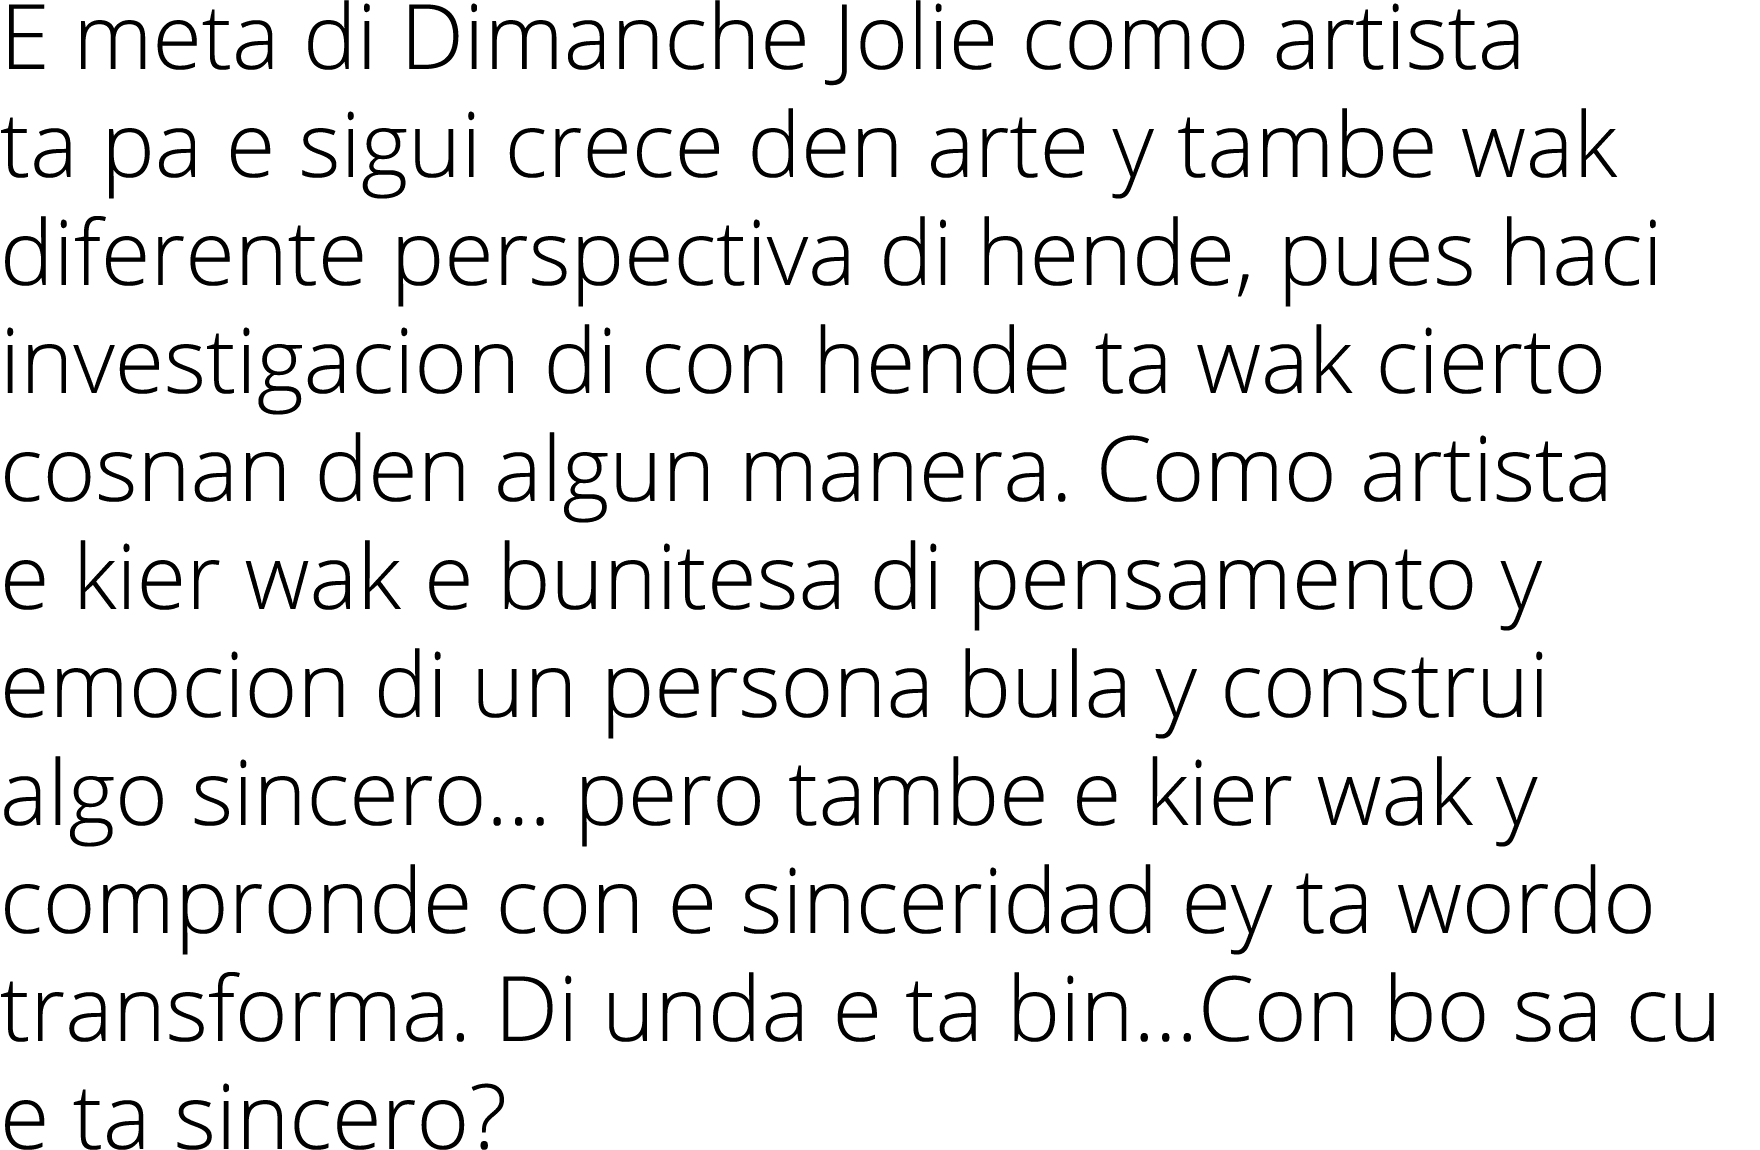 E meta di Dimanche Jolie como artista ta pa e sigui crece den arte y tambe wak diferente perspectiva di hende, pues h...